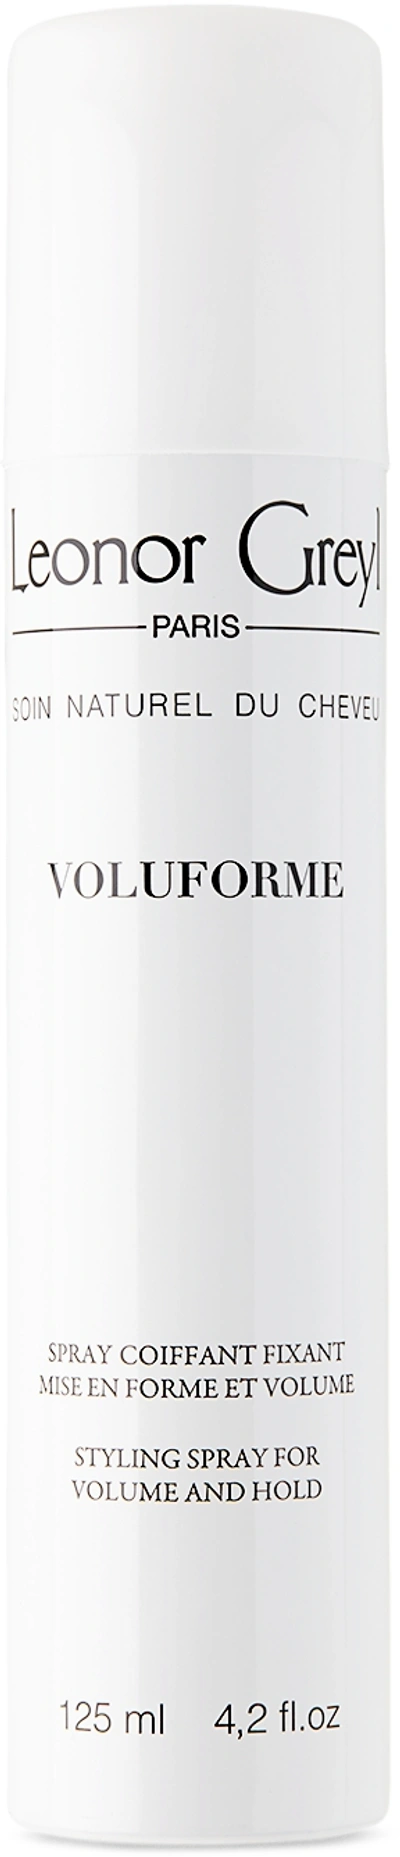 Leonor Greyl ‘voluforme' Hair Spray, 125 ml In Na